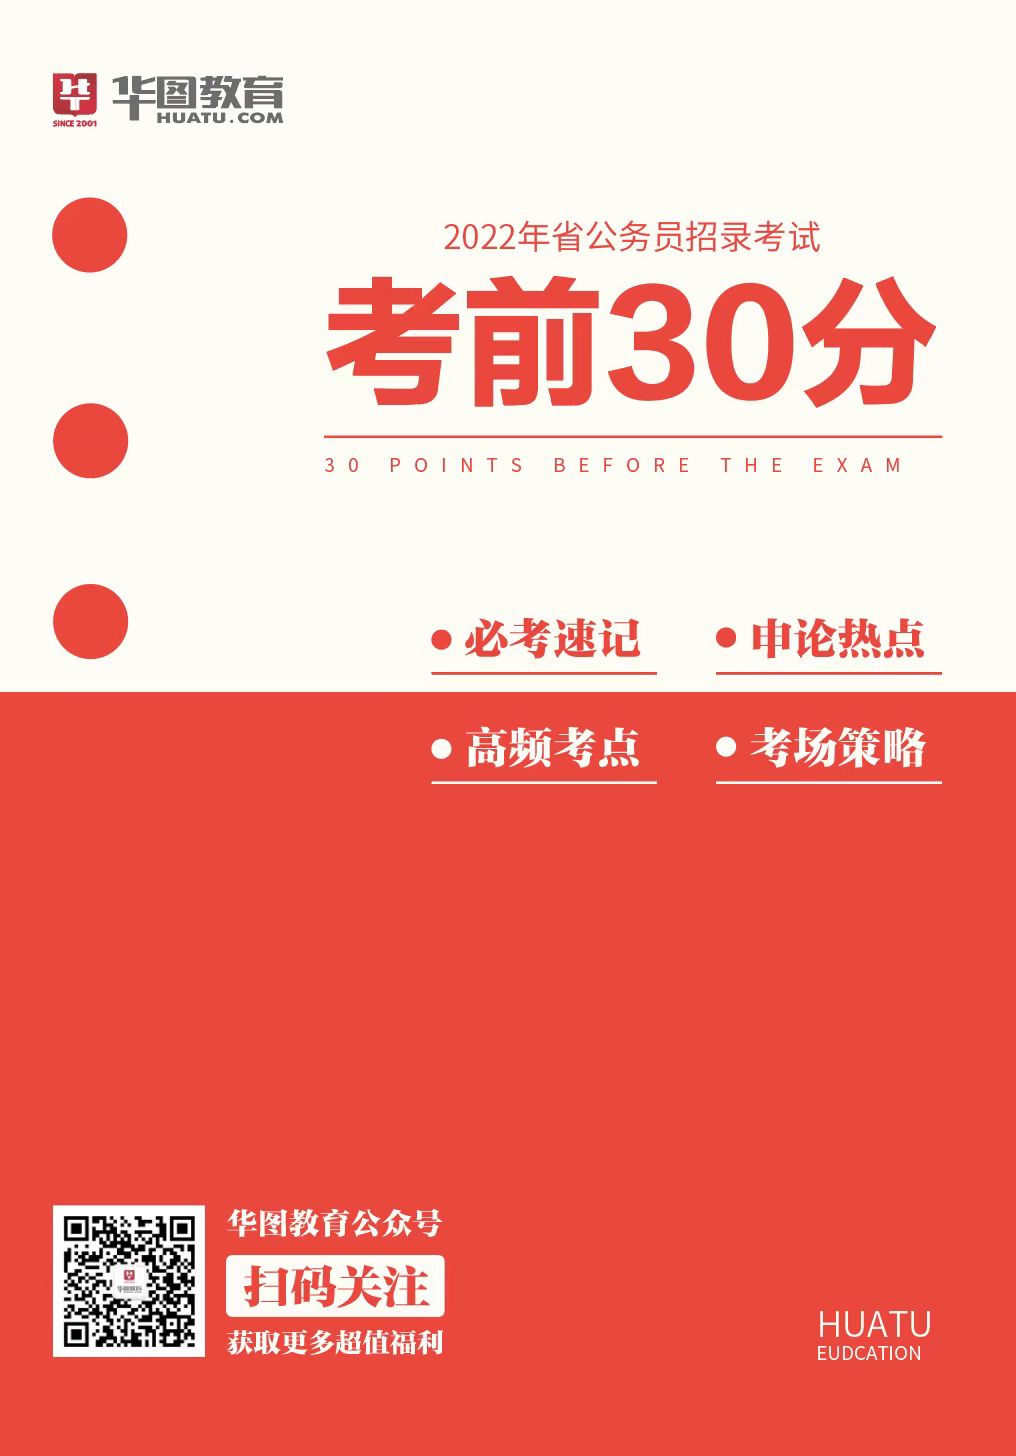 2022年四川省公务员考前30分考试